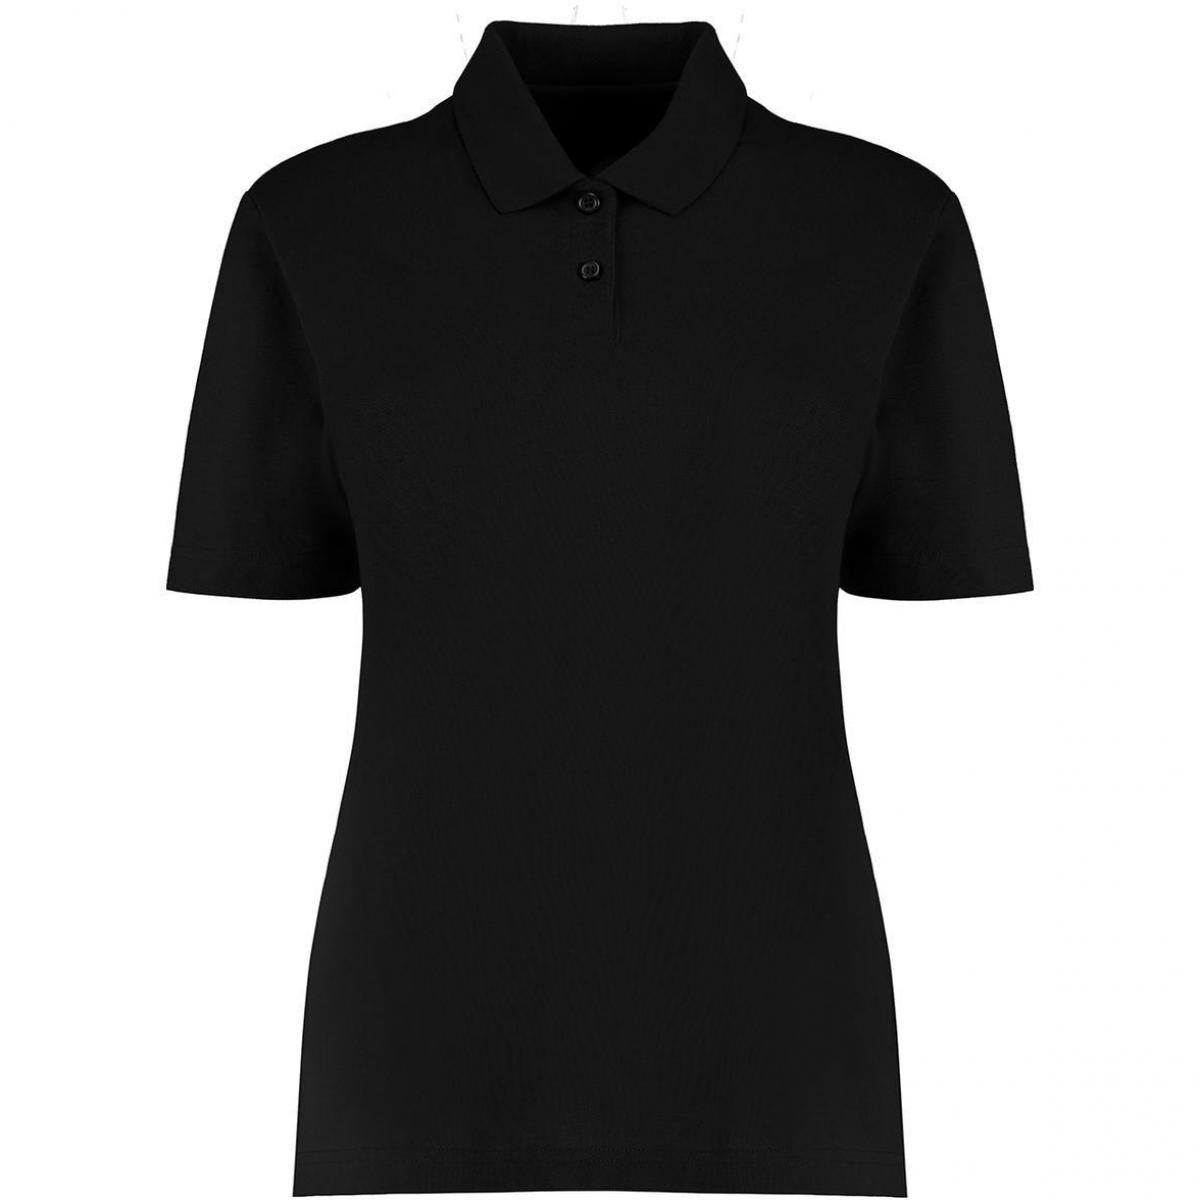 Hersteller: Kustom Kit Herstellernummer: KK722 Artikelbezeichnung: Women's Regular Fit Workforce Poloshirt für Damen Farbe: Black